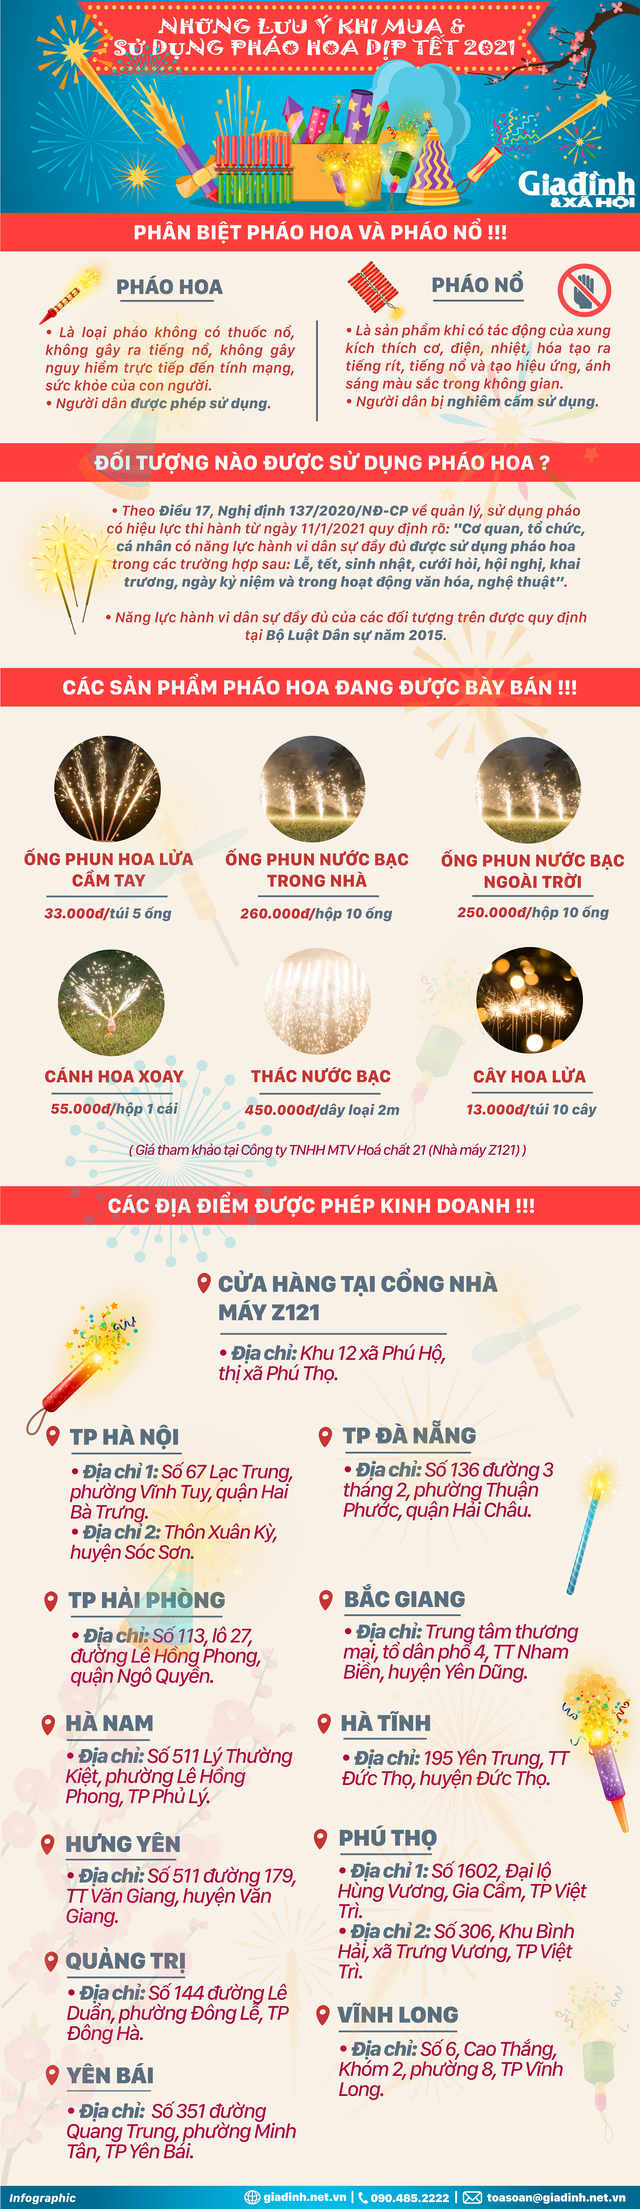 [infographic] Thông tin chi tiết về việc mua, bán và sử dụng pháo hoa dịp Tết - Ảnh 1.